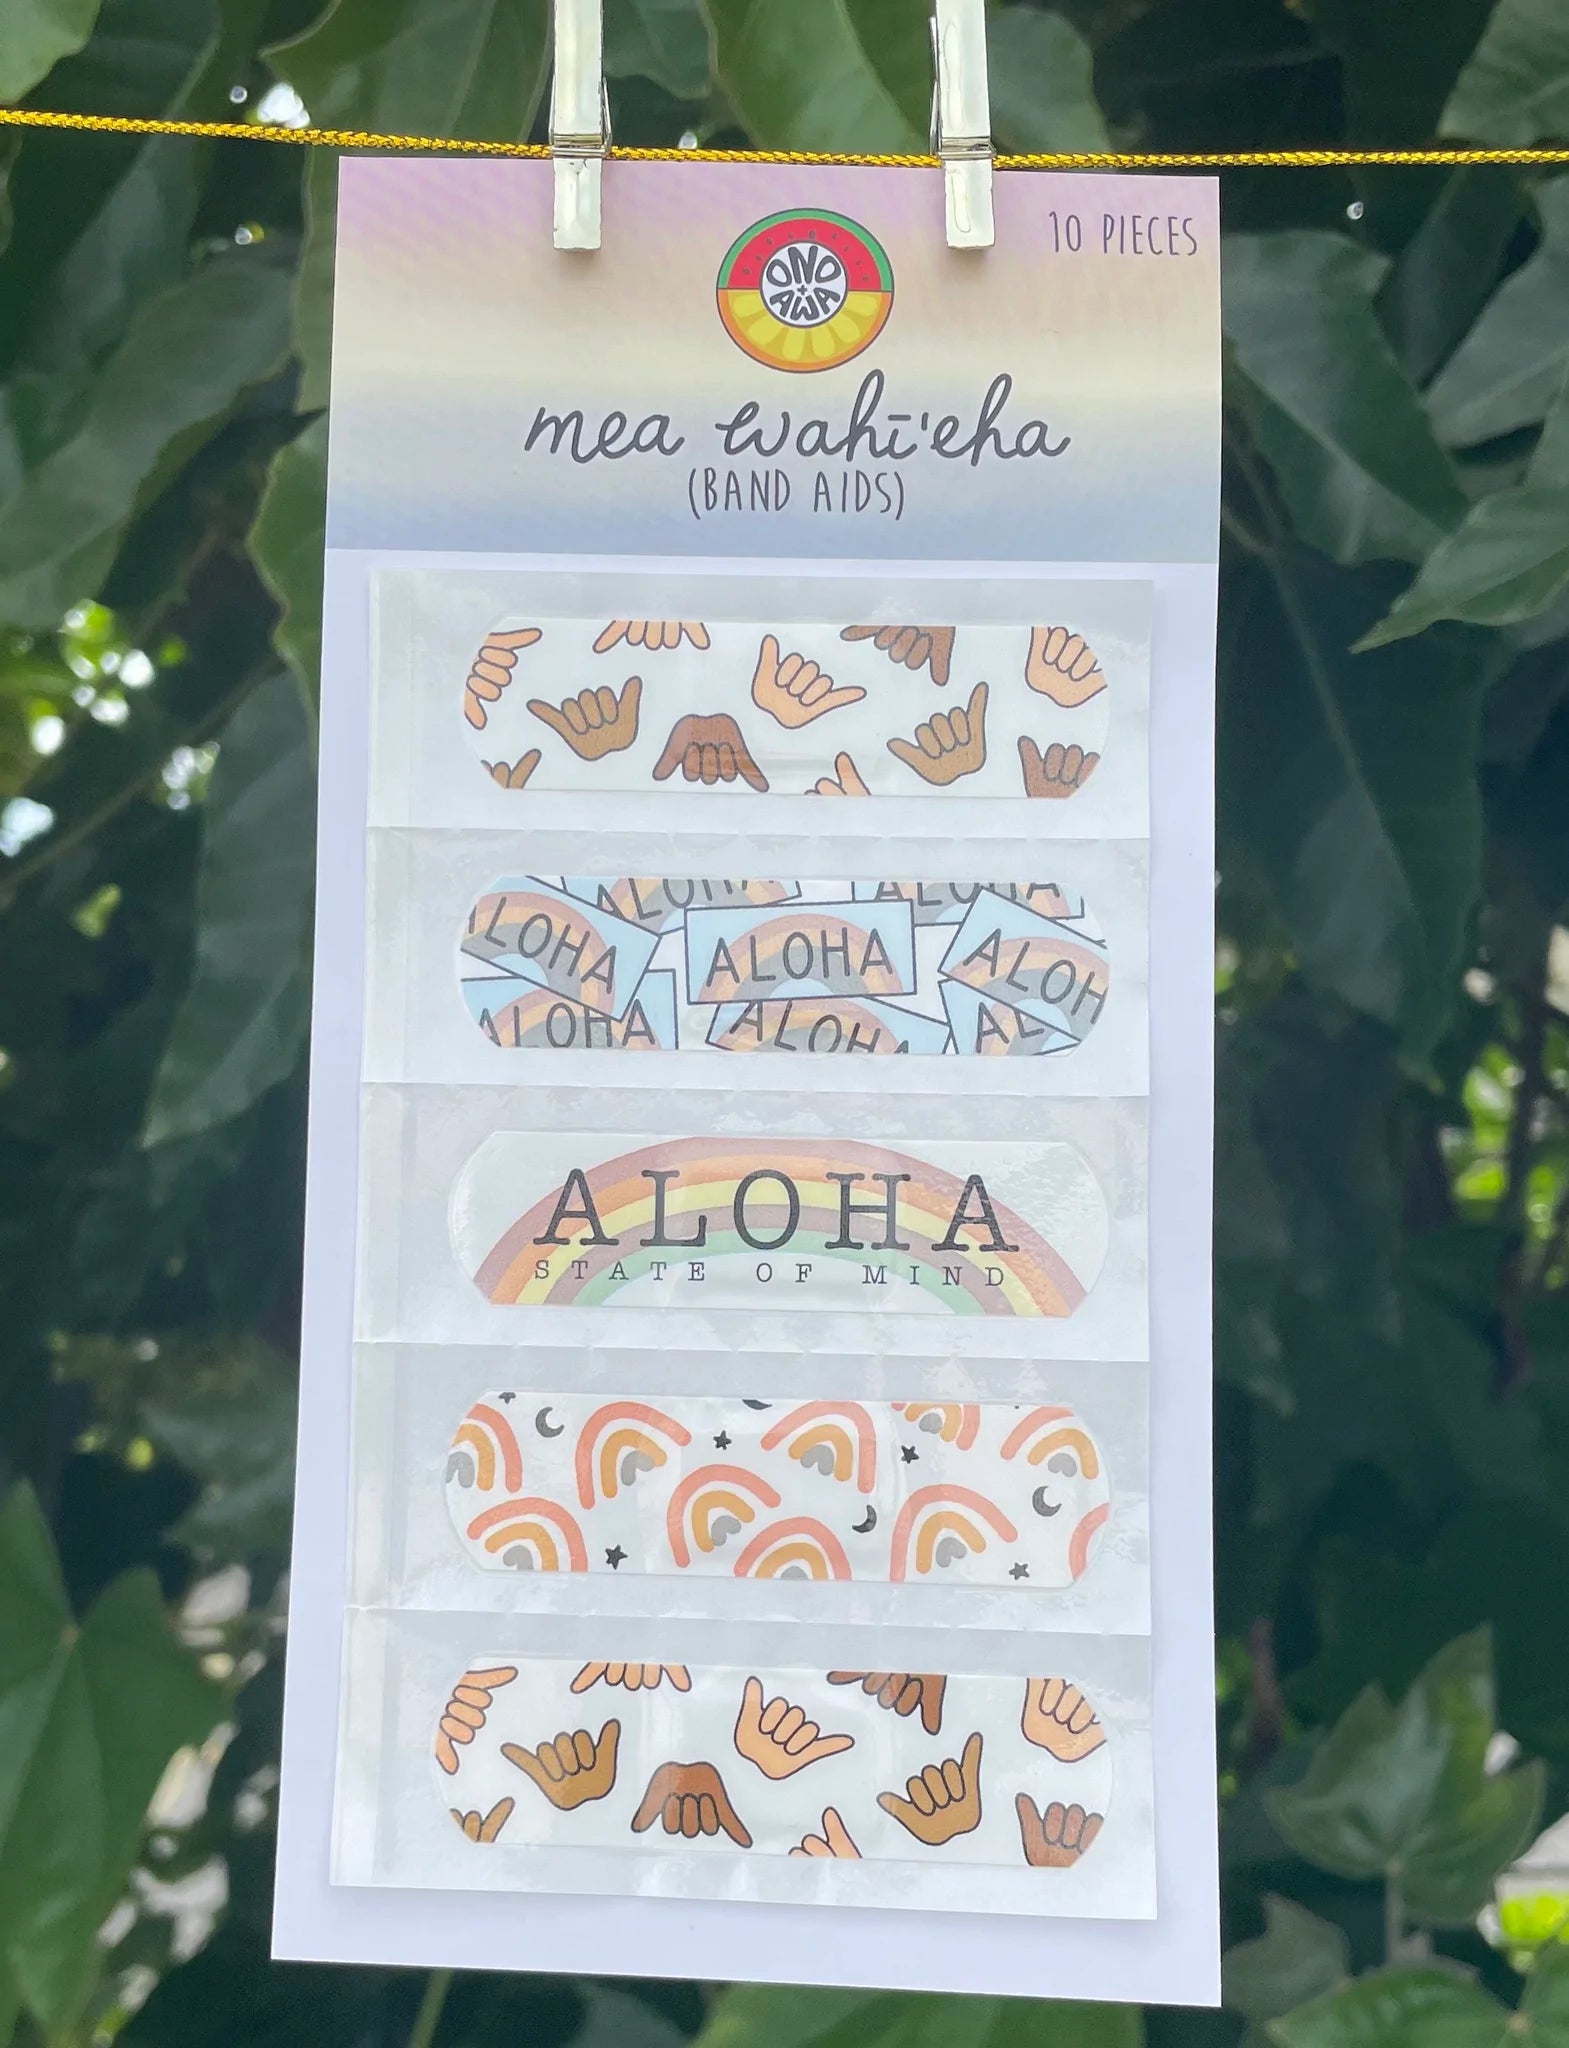 Pop-Up Mākeke - 'Ono + Awai Keiki Club - Waterproof Band Aids (Mea Wahīʻeha) - Aloha